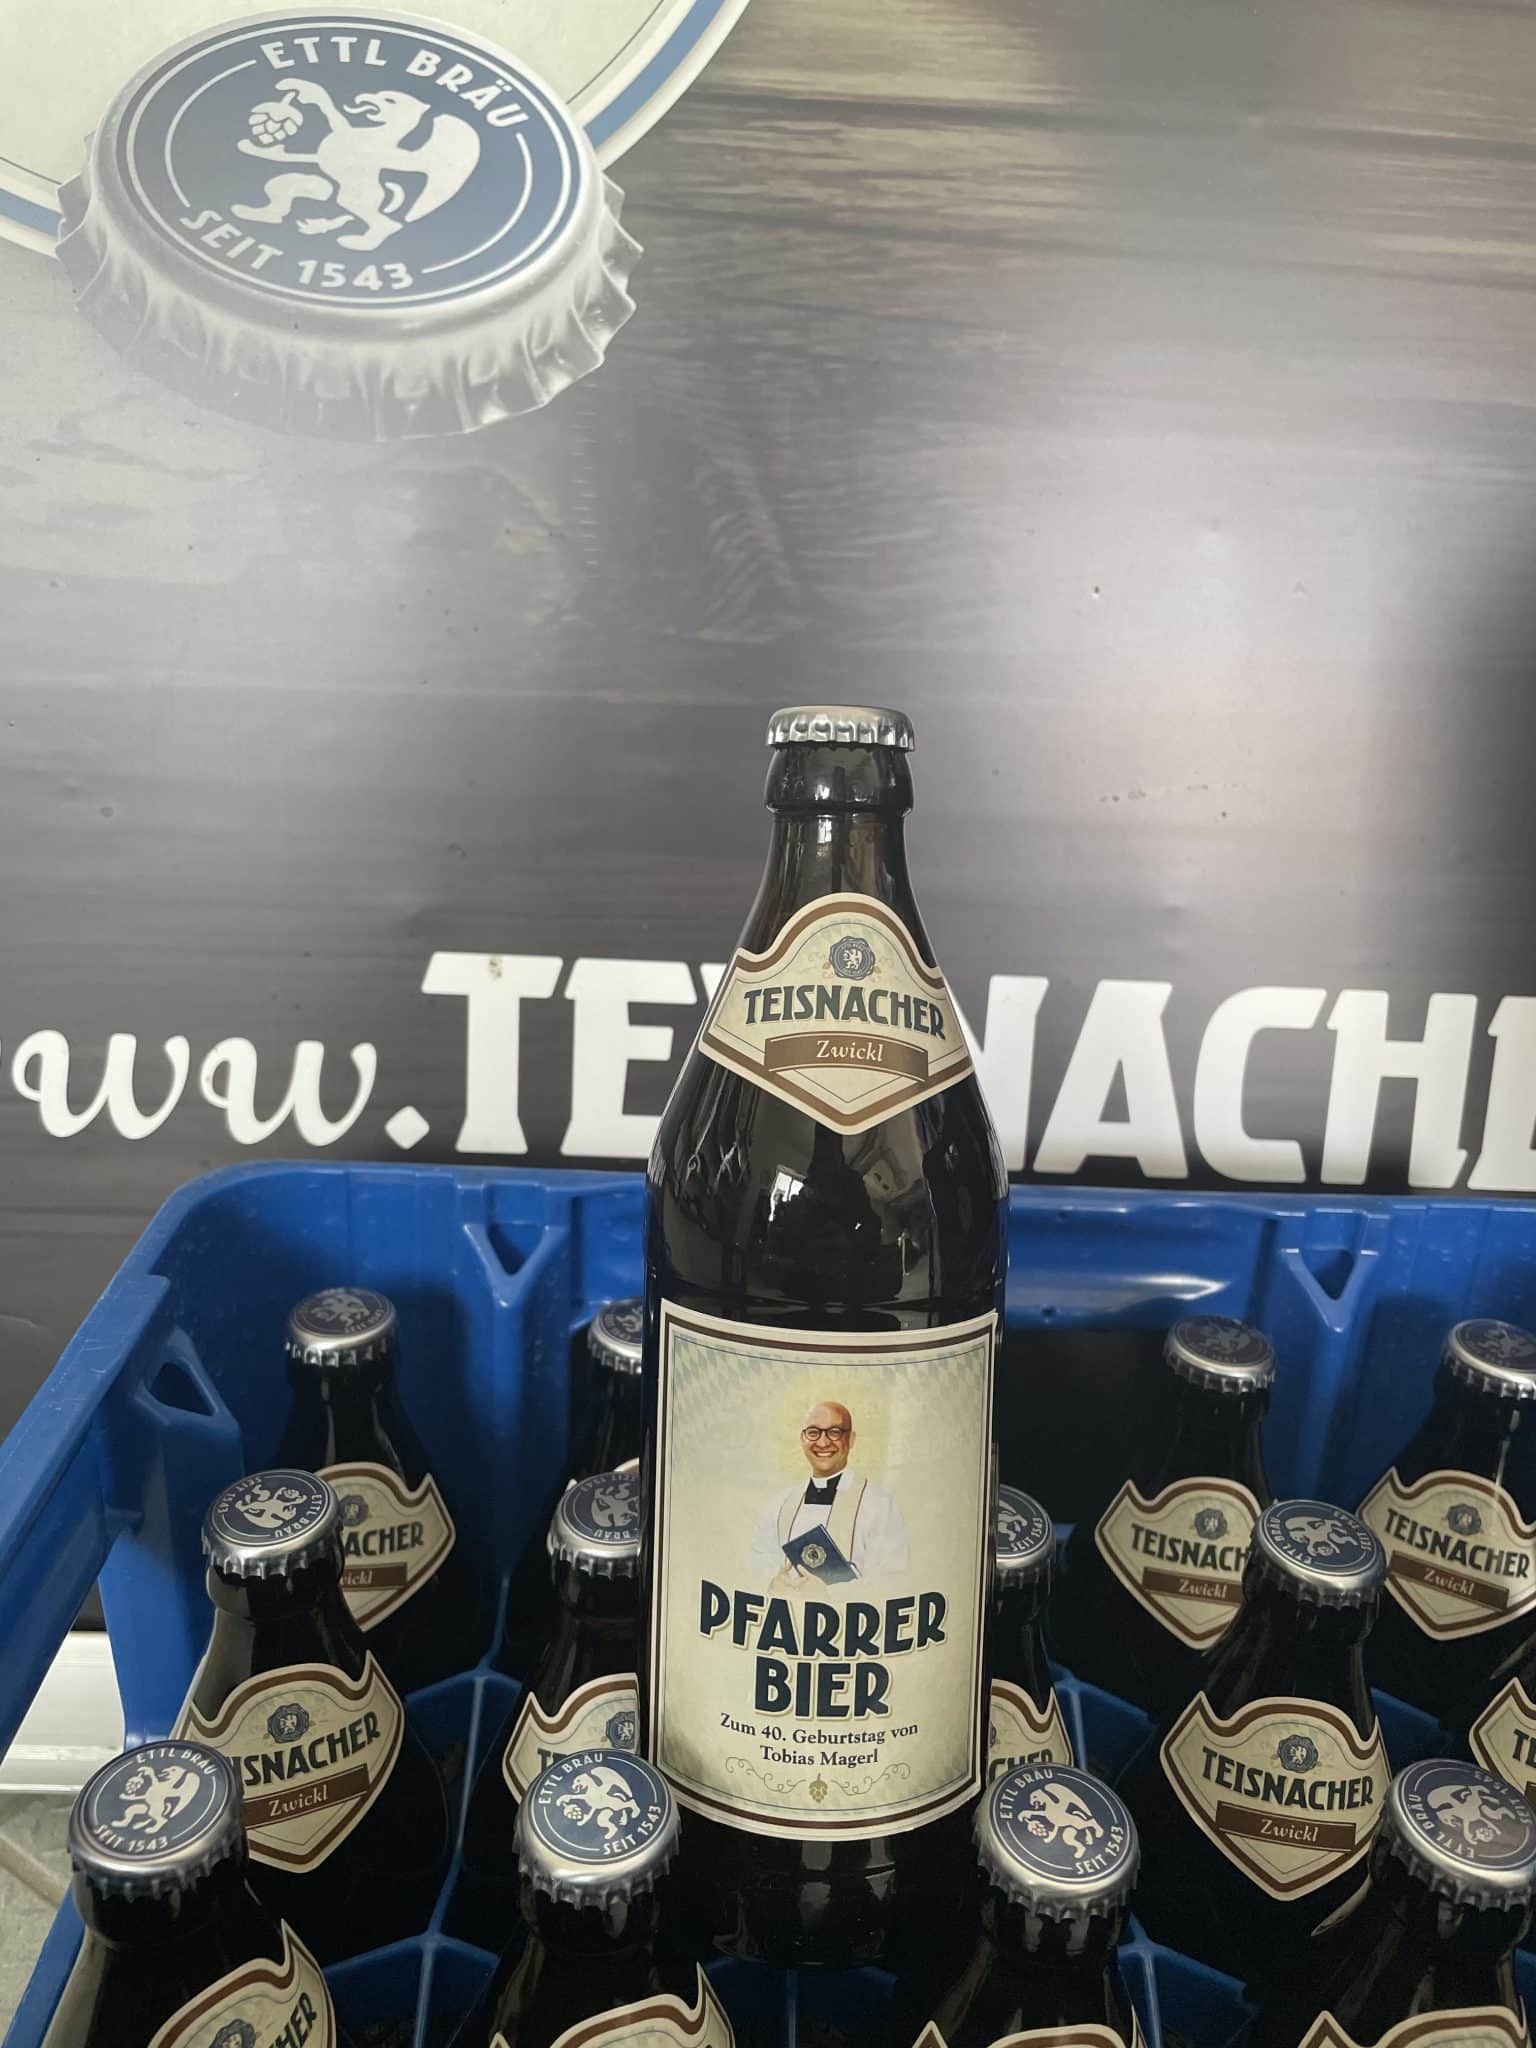 Bier mit eigenem Etikett - Teisnacher